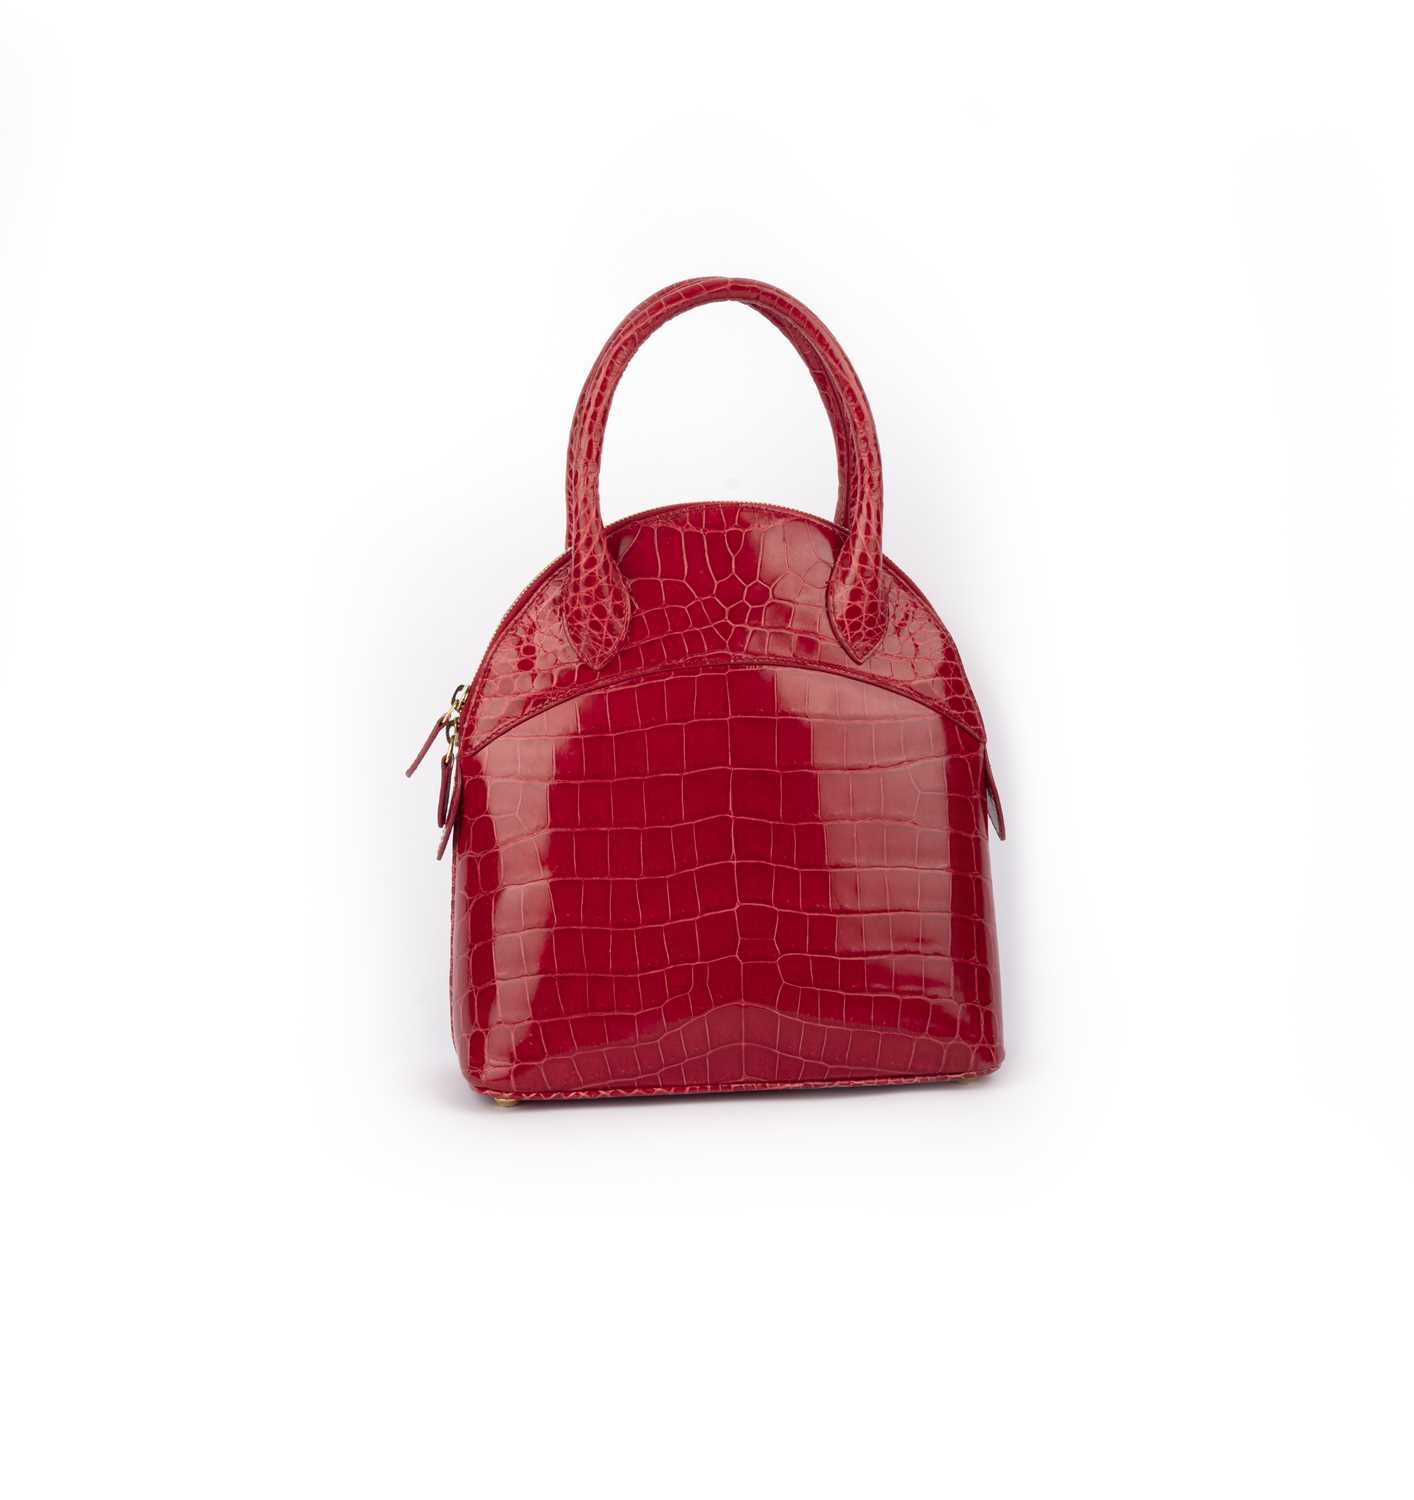 λ Asprey, a raspberry crocodile top handle bag 24cm wide, 26cm high, 42cm strap drop, includes - Image 4 of 5